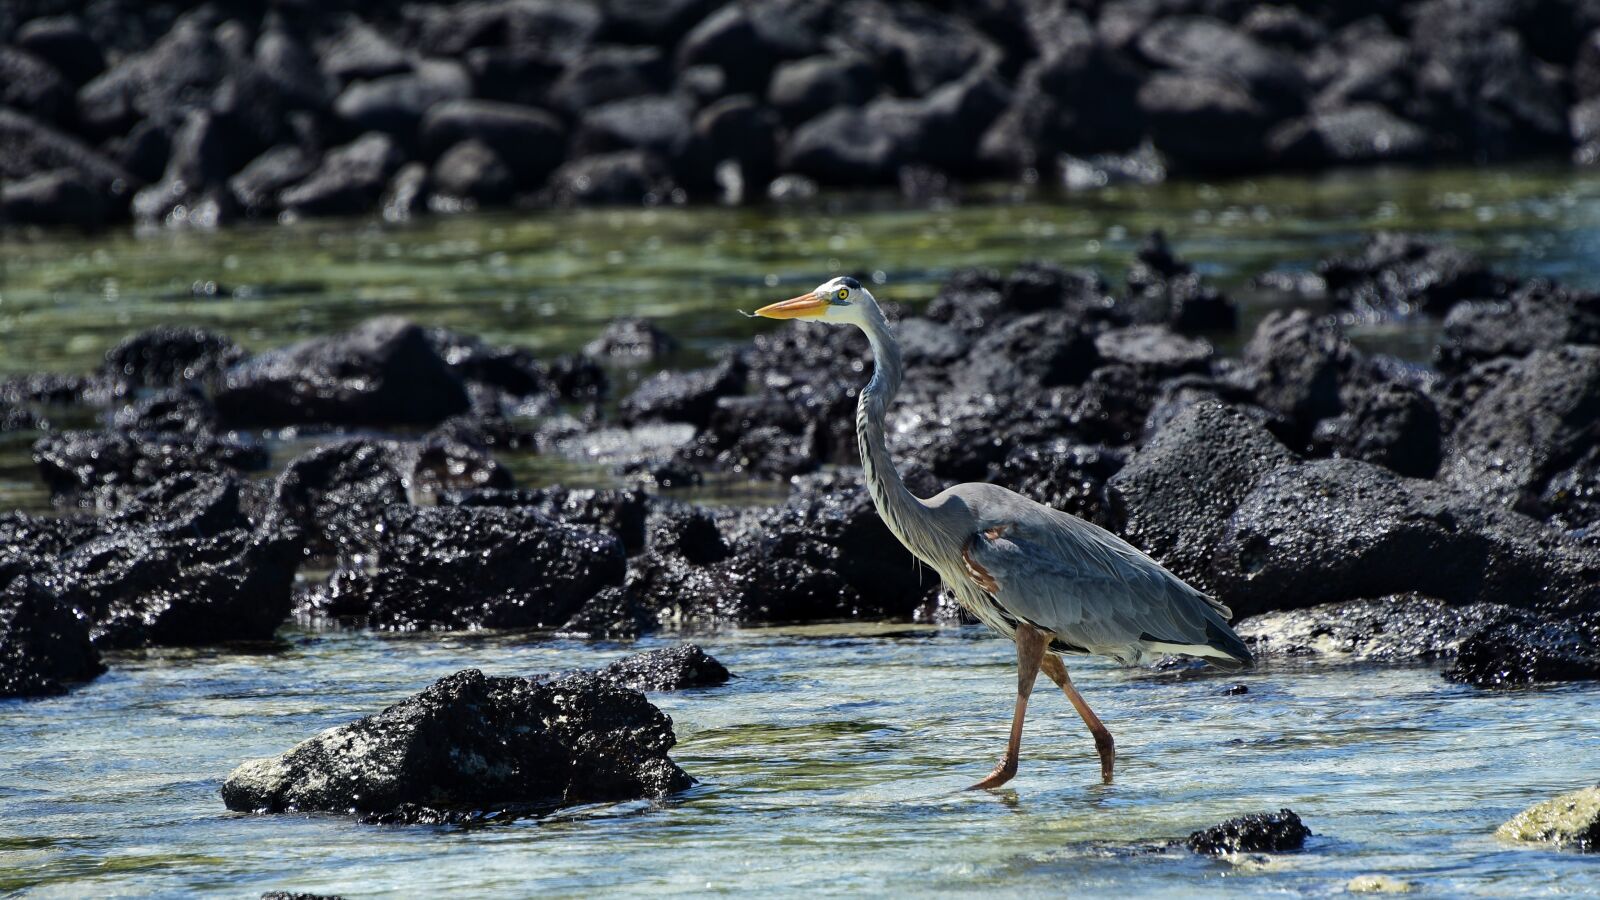 Nikon D810 sample photo. Animal, beach, beak, bird photography